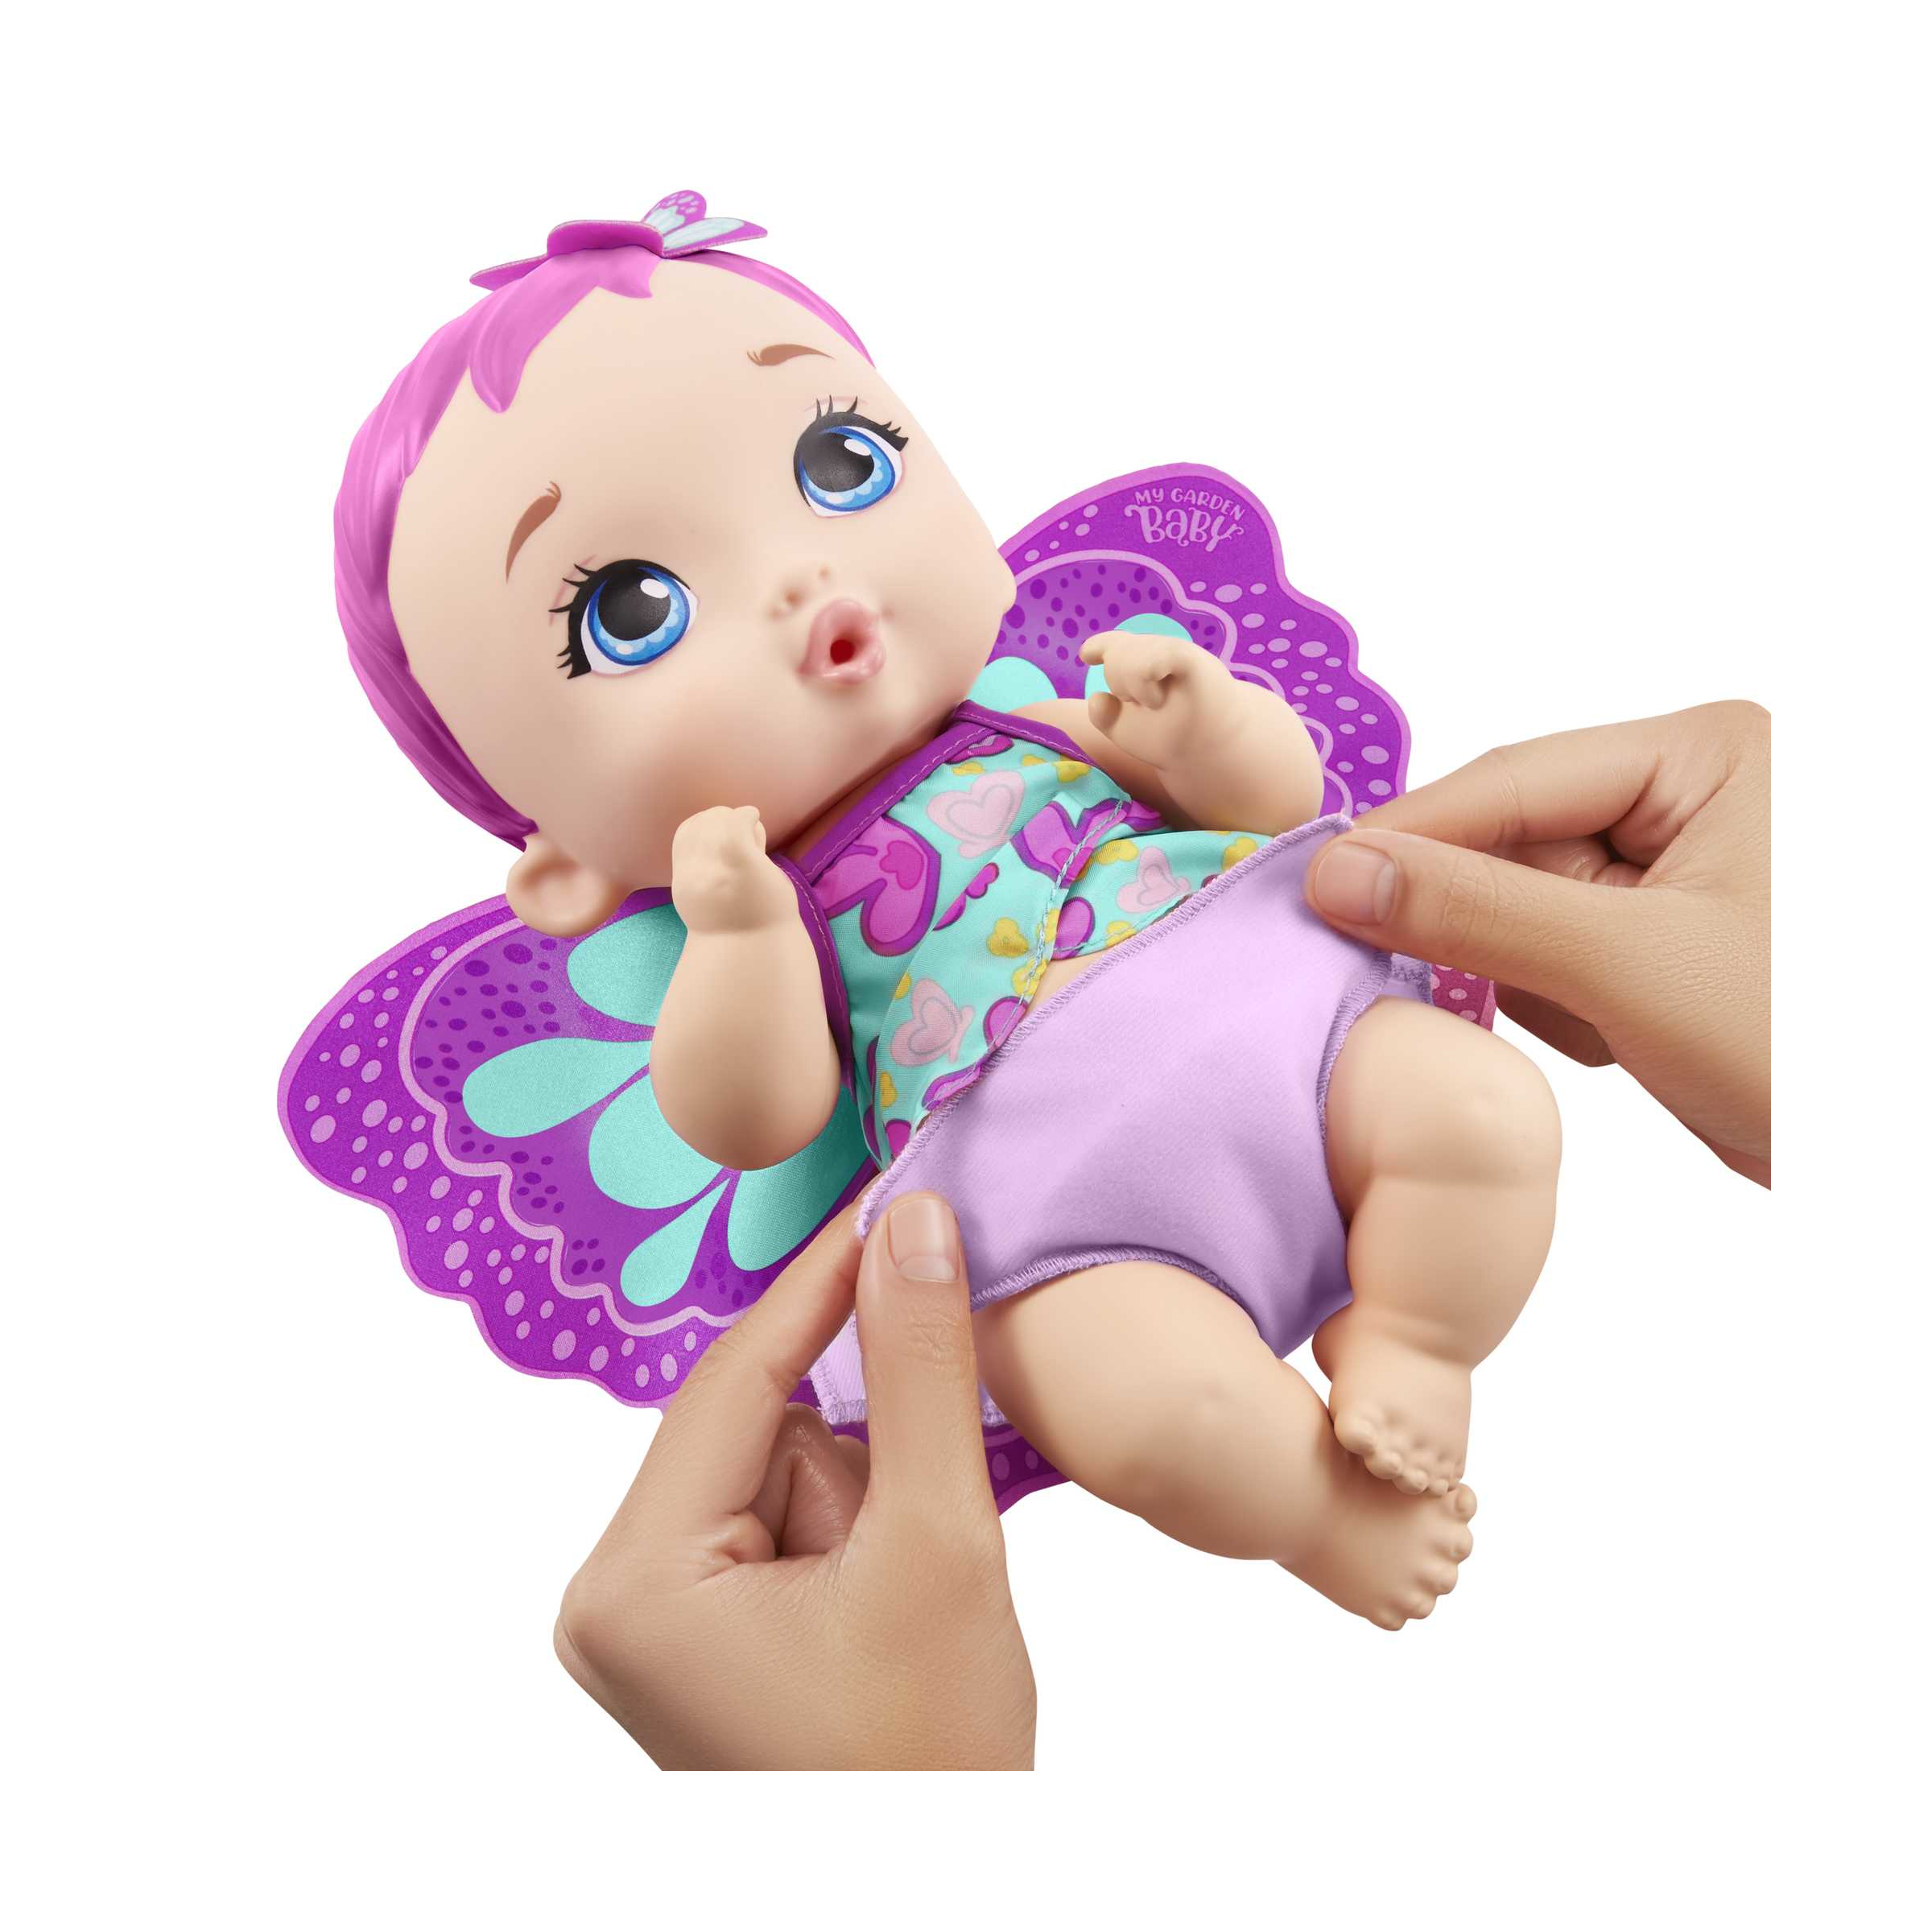 My garden baby, bambola junior farfalla rosa (30 cm) con pannolino riutilizzabile, vestiti e ali rimovibili; giocattolo per bambini 2+ anni, gyp10 - MY GARDEN BABY